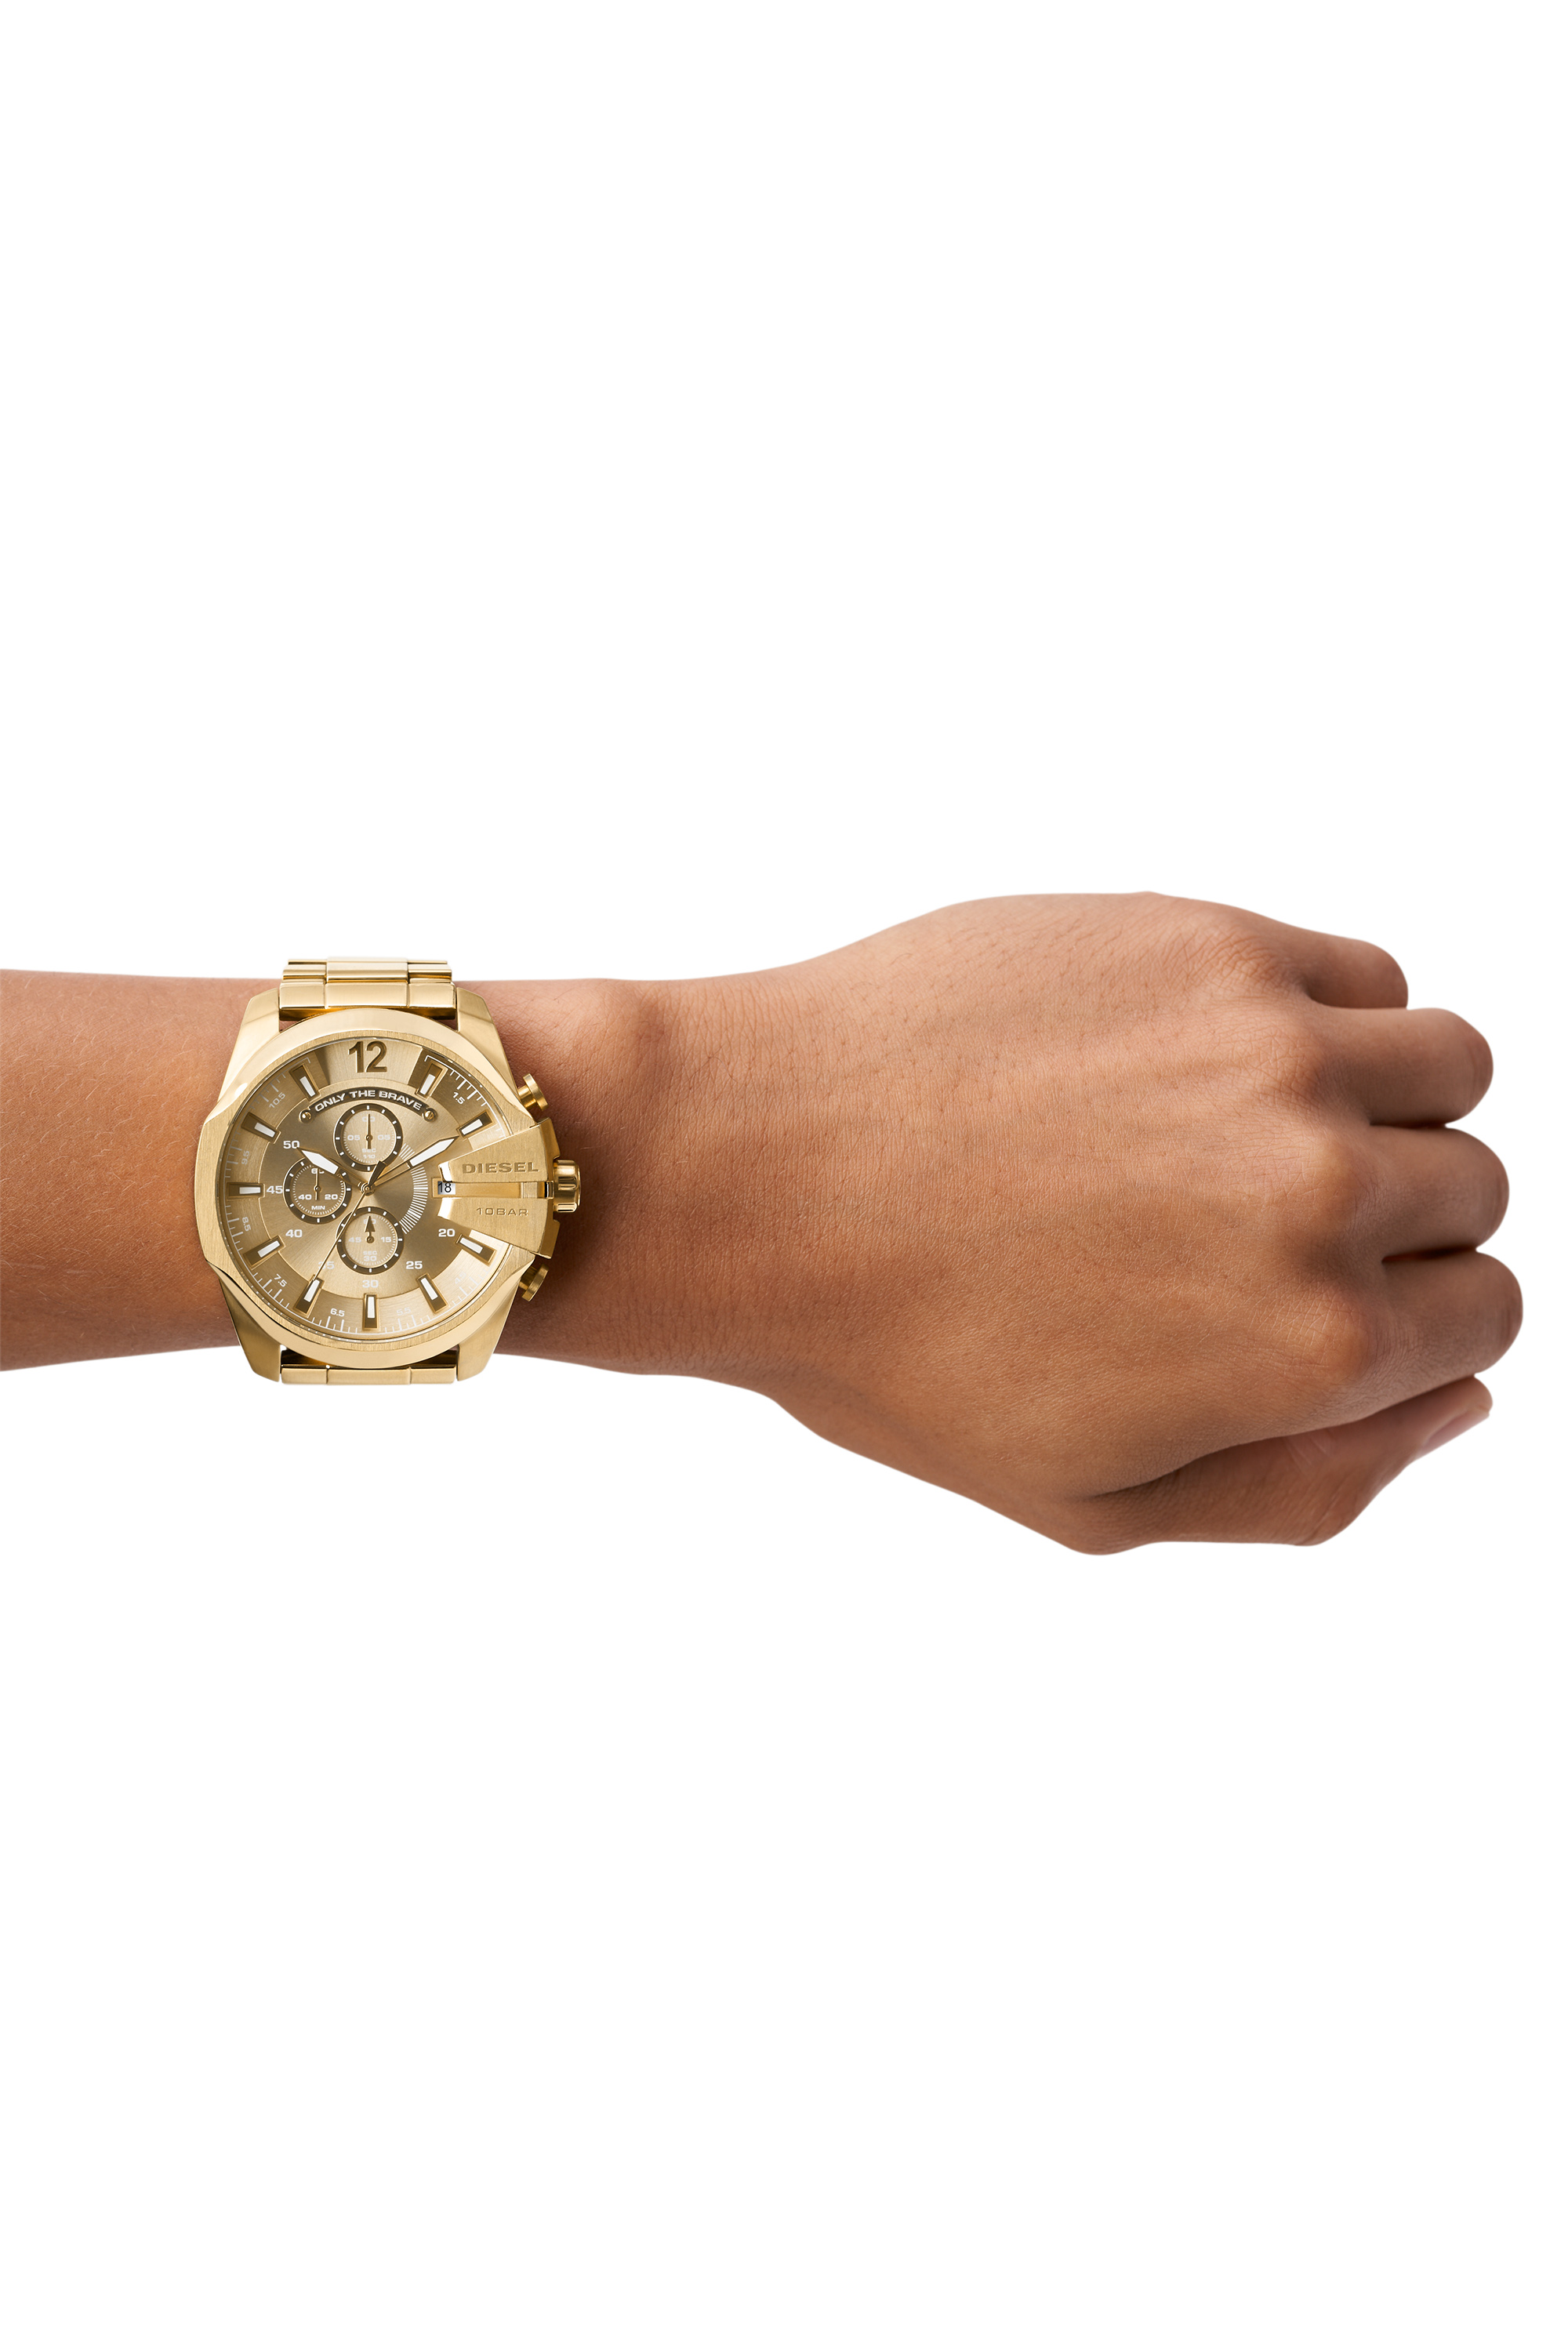 Diesel - DZ4360 MEGA CHIEF, Man Gold-tone watch in Oro - Image 2